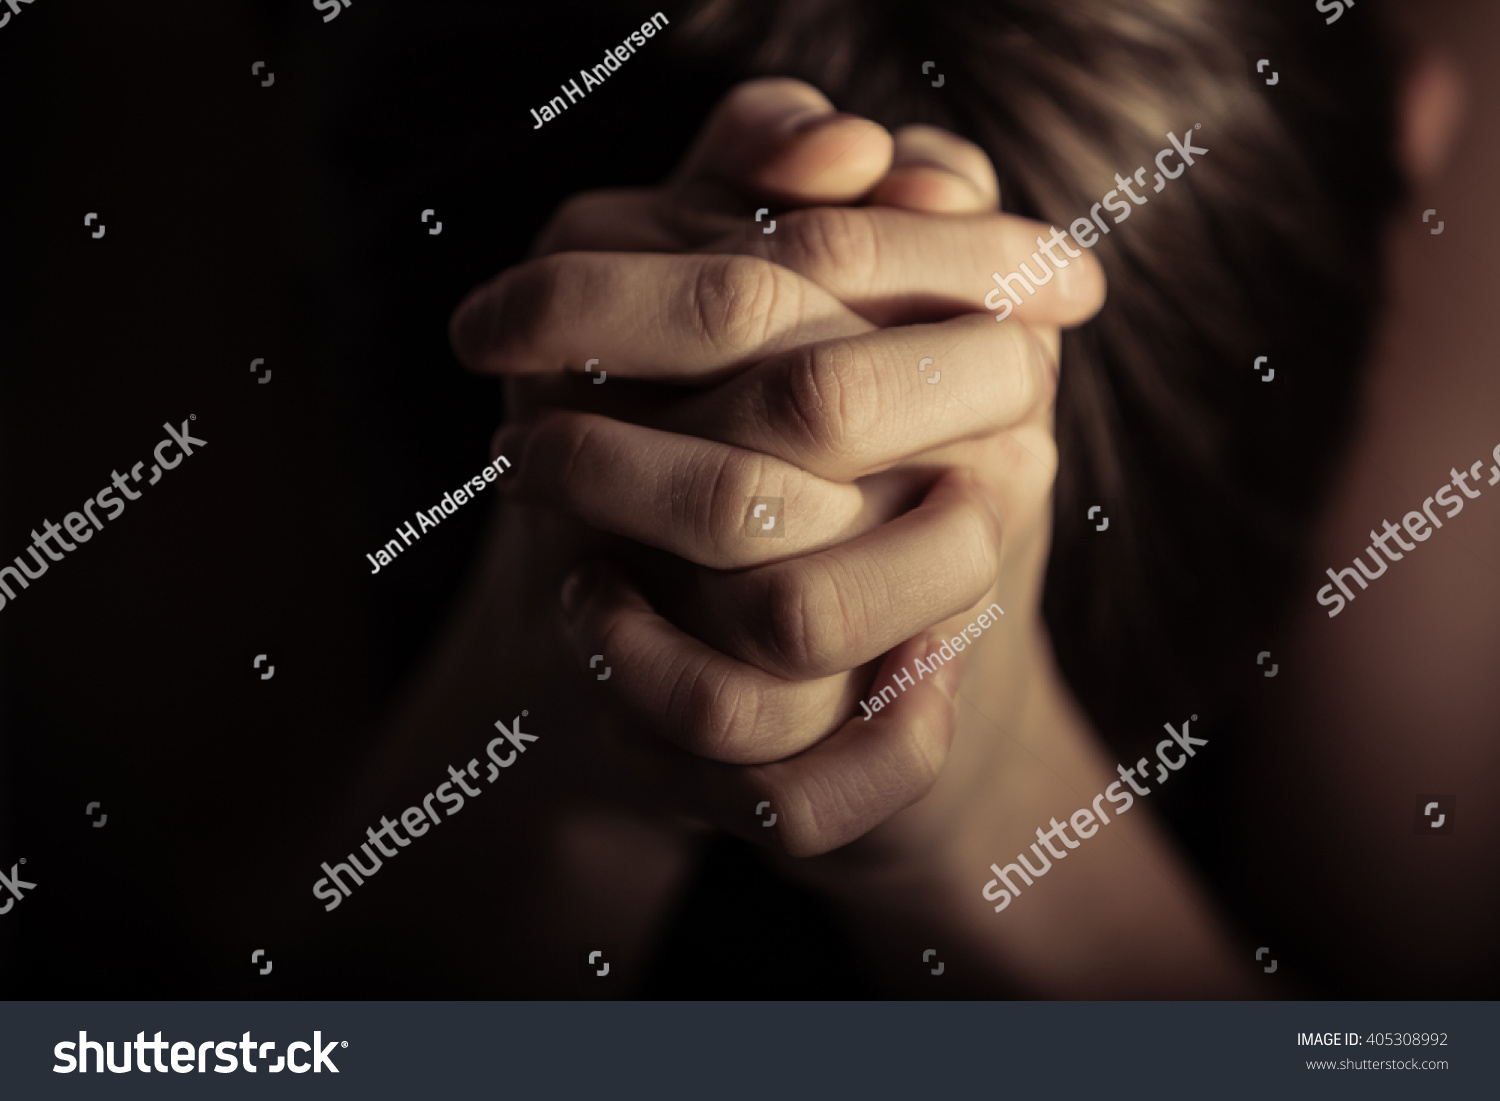 キリスト教の伝統に従い 祈りの時に両手を組んで見せる接写 の写真素材 今すぐ編集